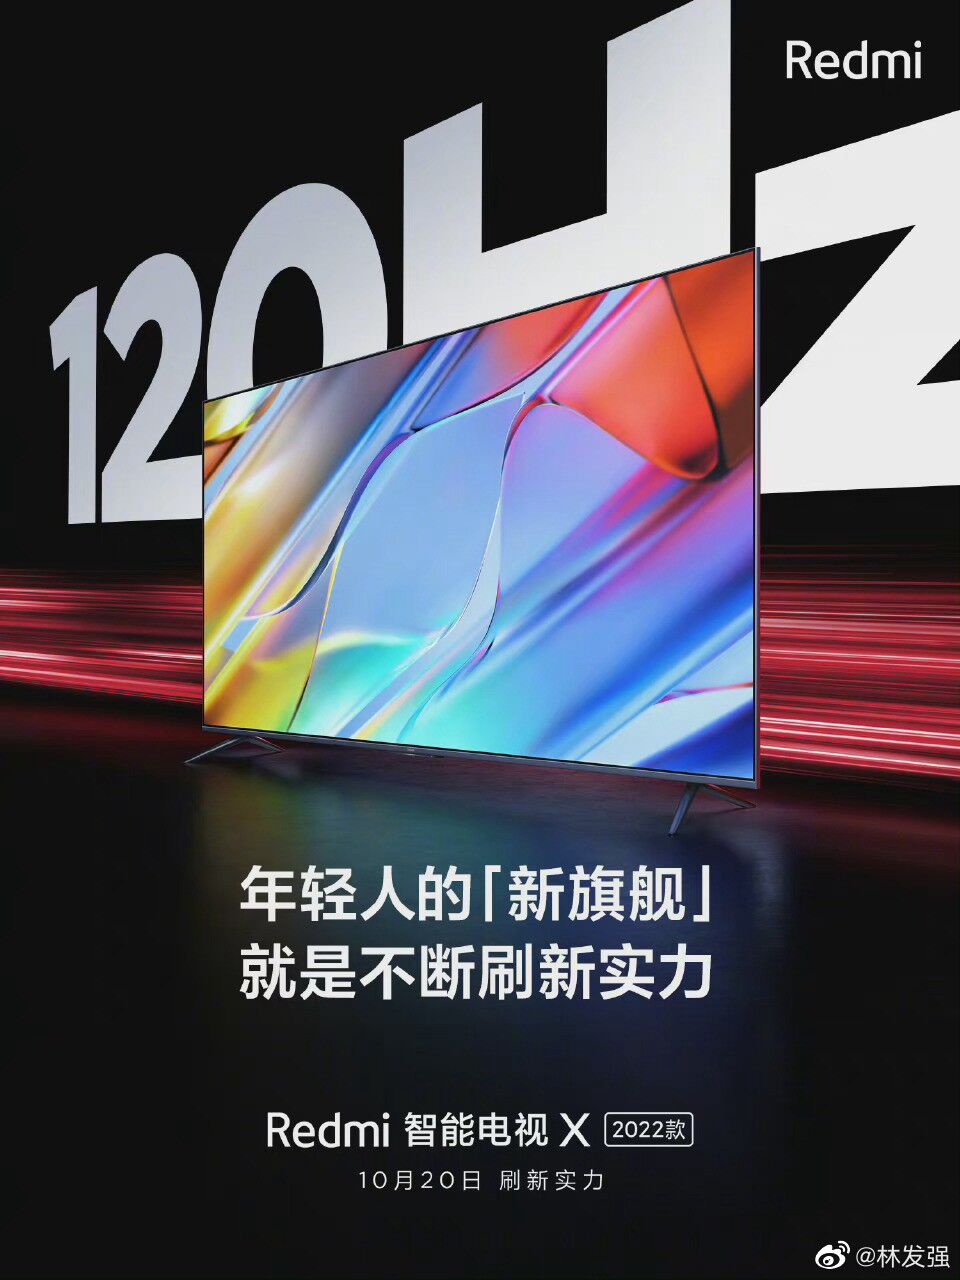 Redmi Smart TV X 2022 xác nhận có màn hình 120Hz ảnh 2